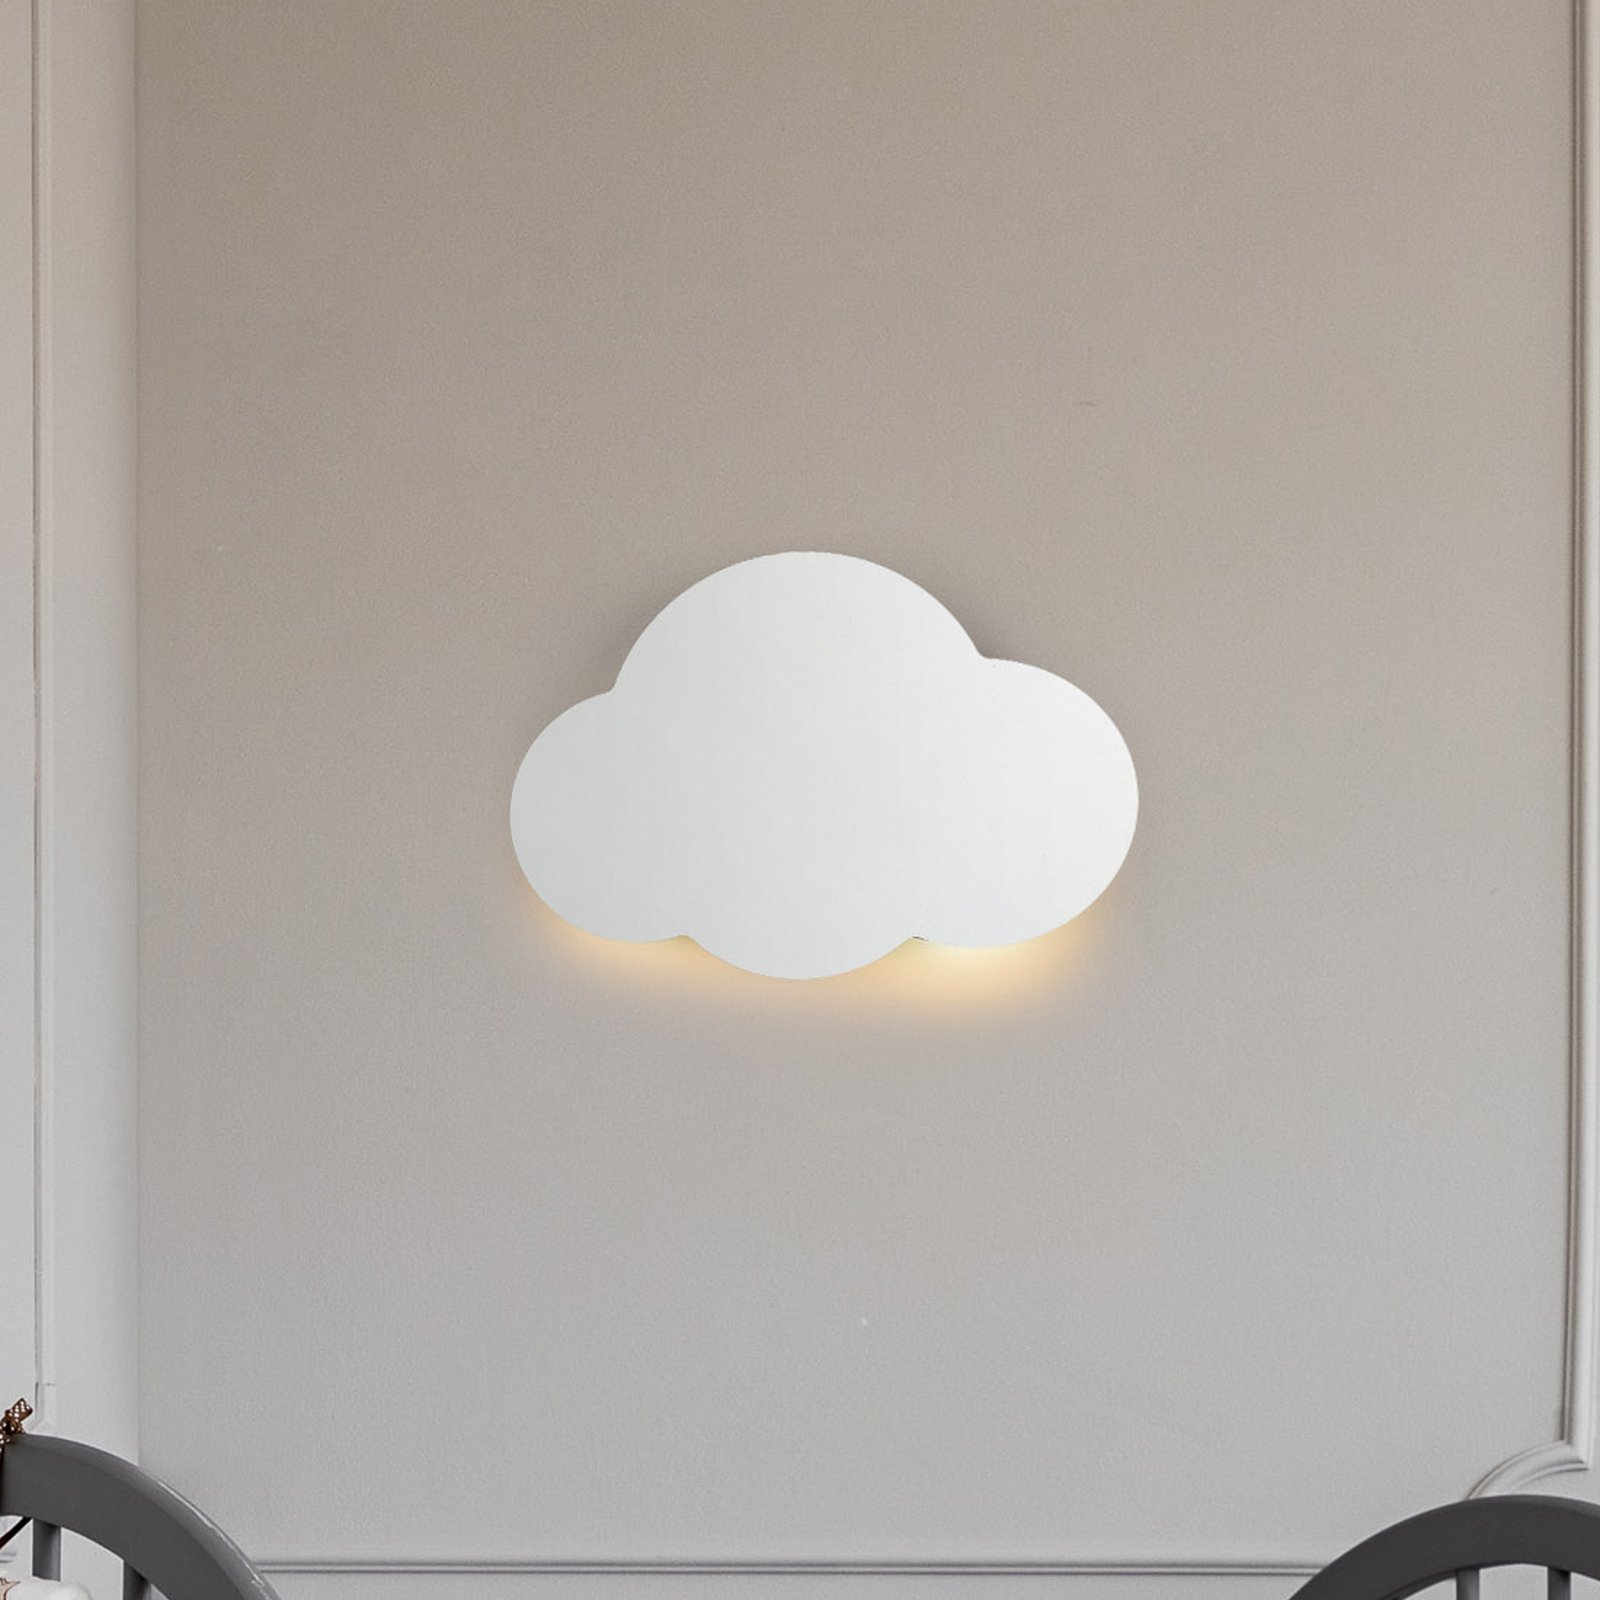 Nástenné svietidlo Cloud, biele, oceľ, nepriame svetlo, 38 x 27 cm